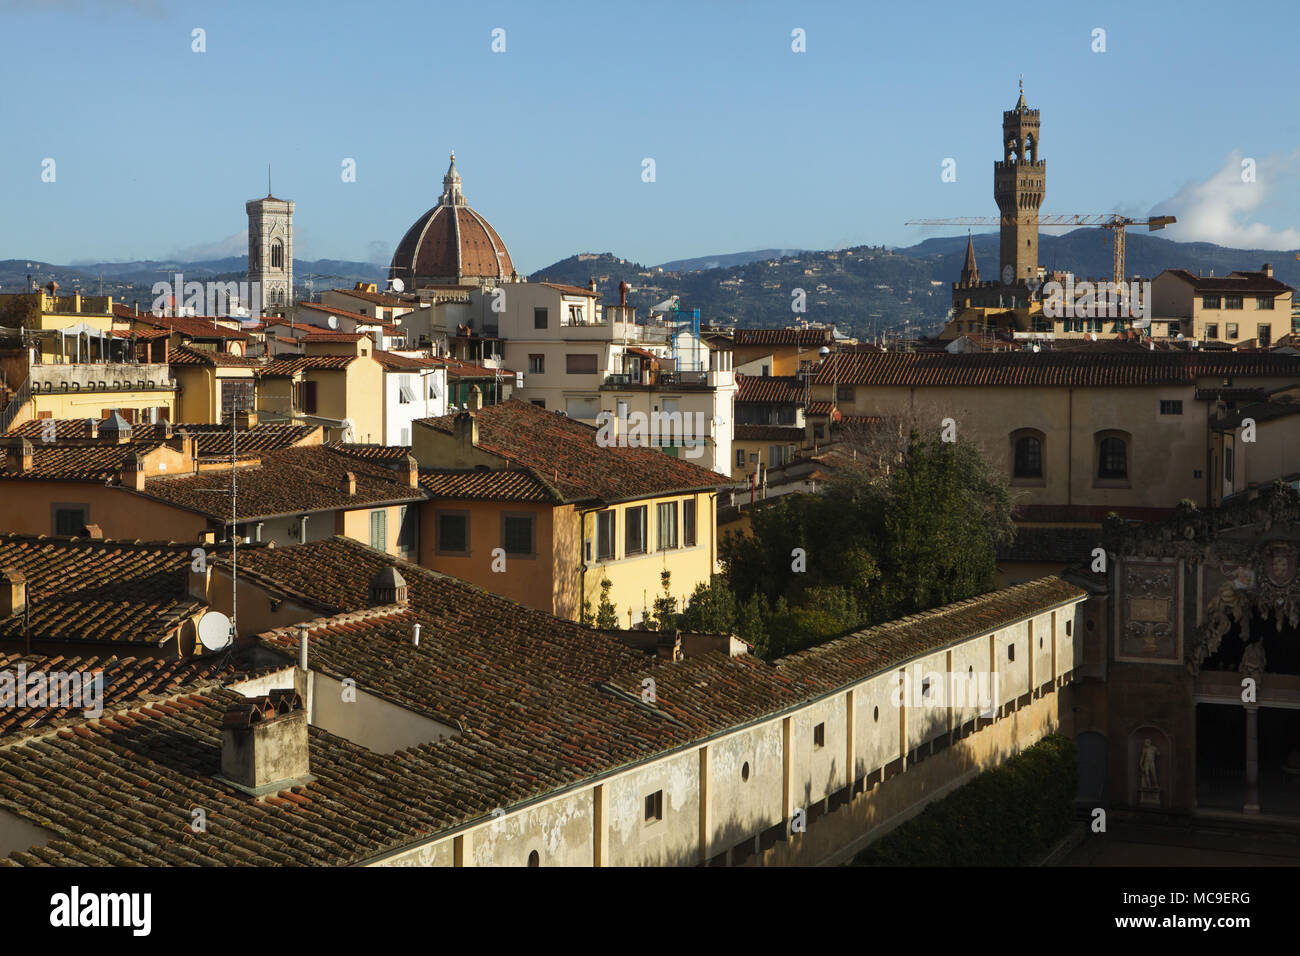 Campanile de Giotto (Campanile de Giotto) et la cathédrale de Florence (Cattedrale di Santa Maria del Fiore) et le Palazzo Vecchio (de gauche à droite) sur la photo d'une fenêtre de l'Palazzo Pitti à Florence, Toscane, Italie. Banque D'Images